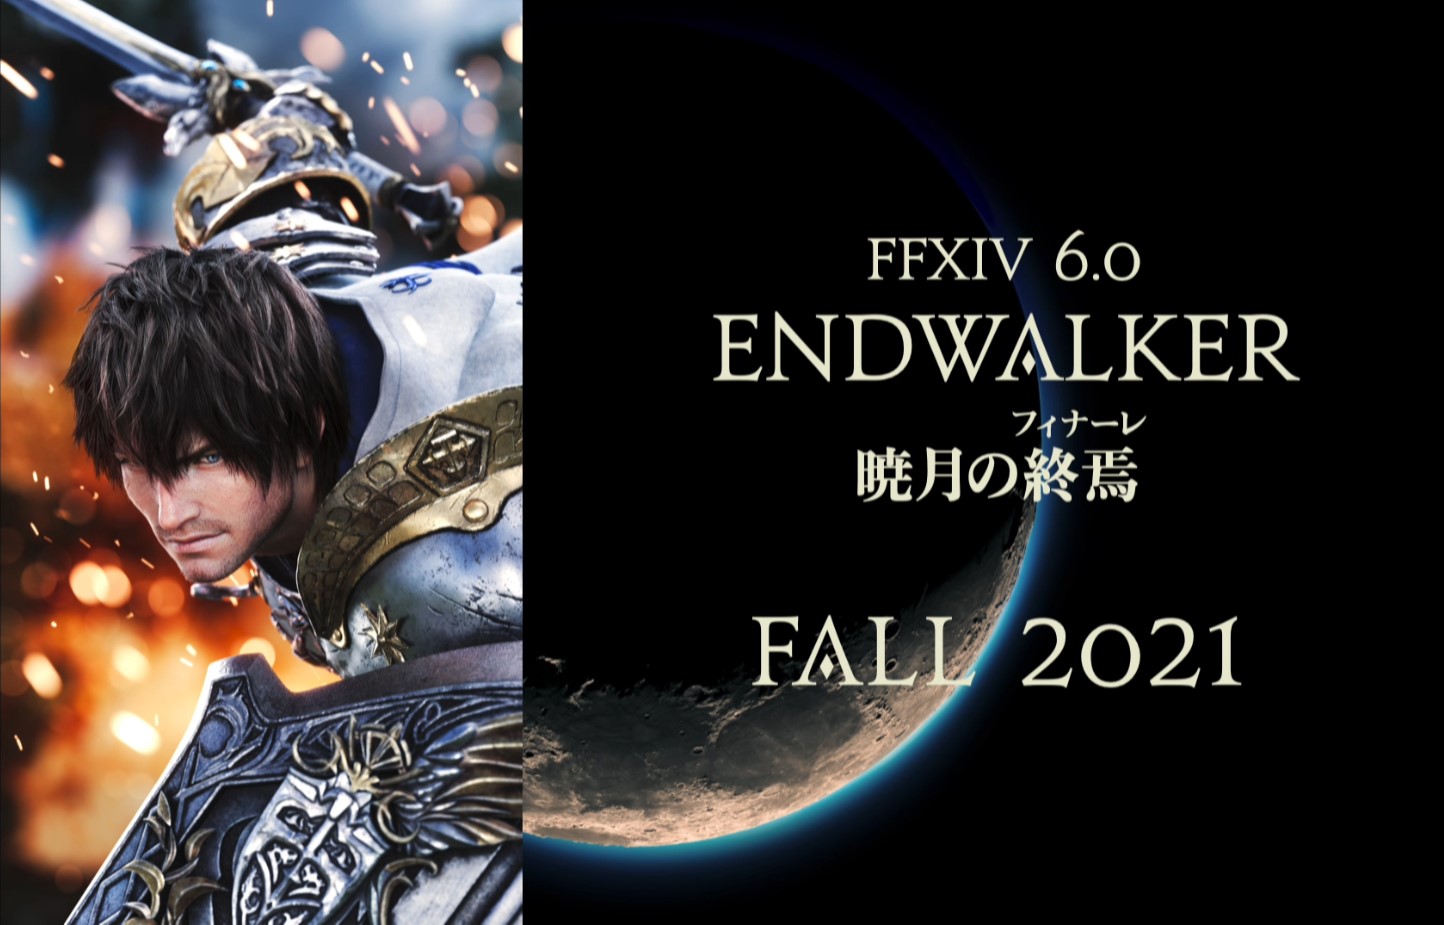 FFXIV 6.0 Endwalker: Fall 2021